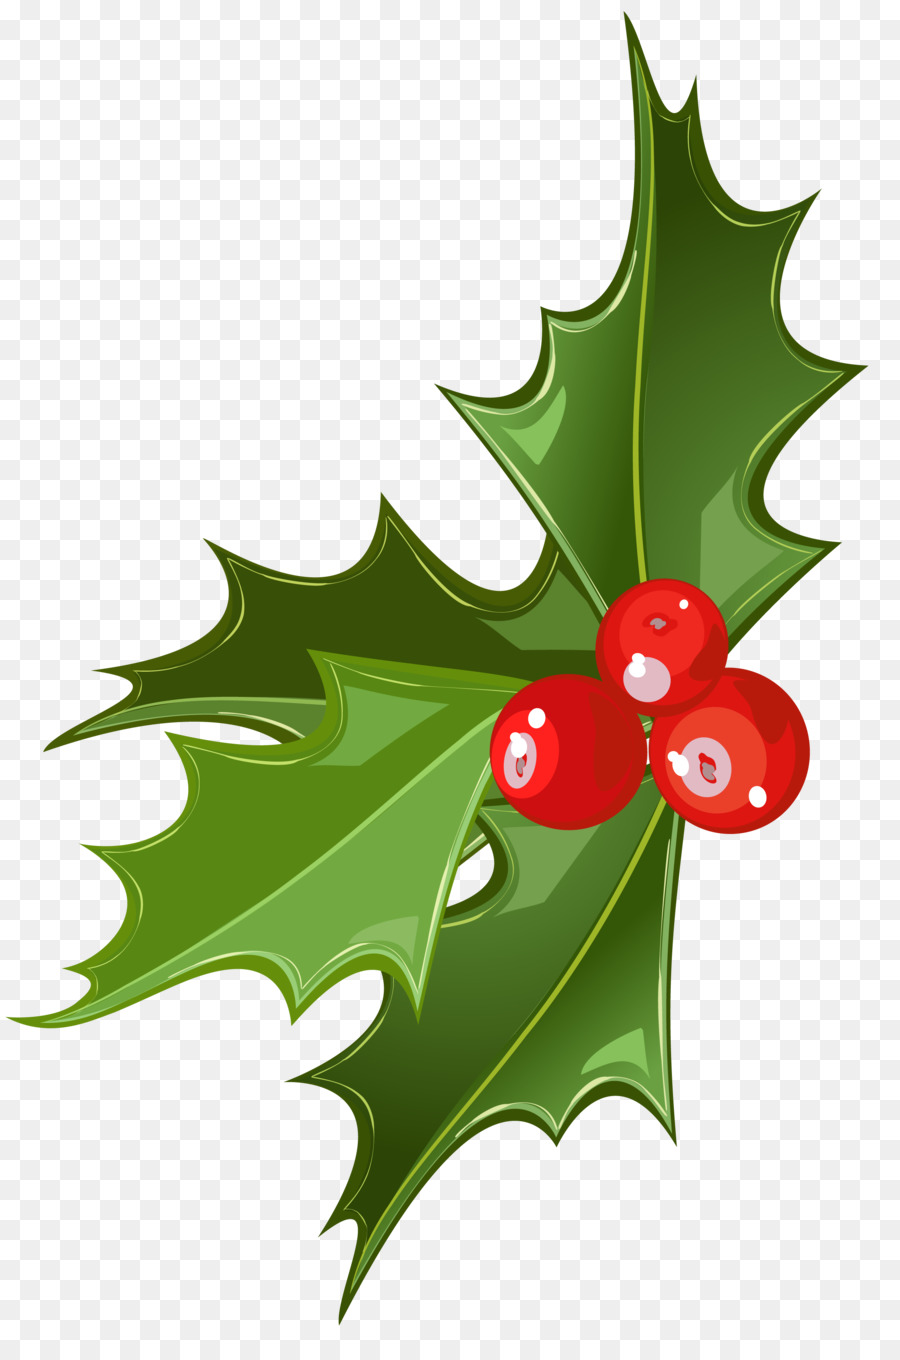 Mistletoe Christmas Viscum album Clip art - Mistletoe Cliparts Transparent png download - 2324*3461 - Free Transparent Mistletoe png Download.